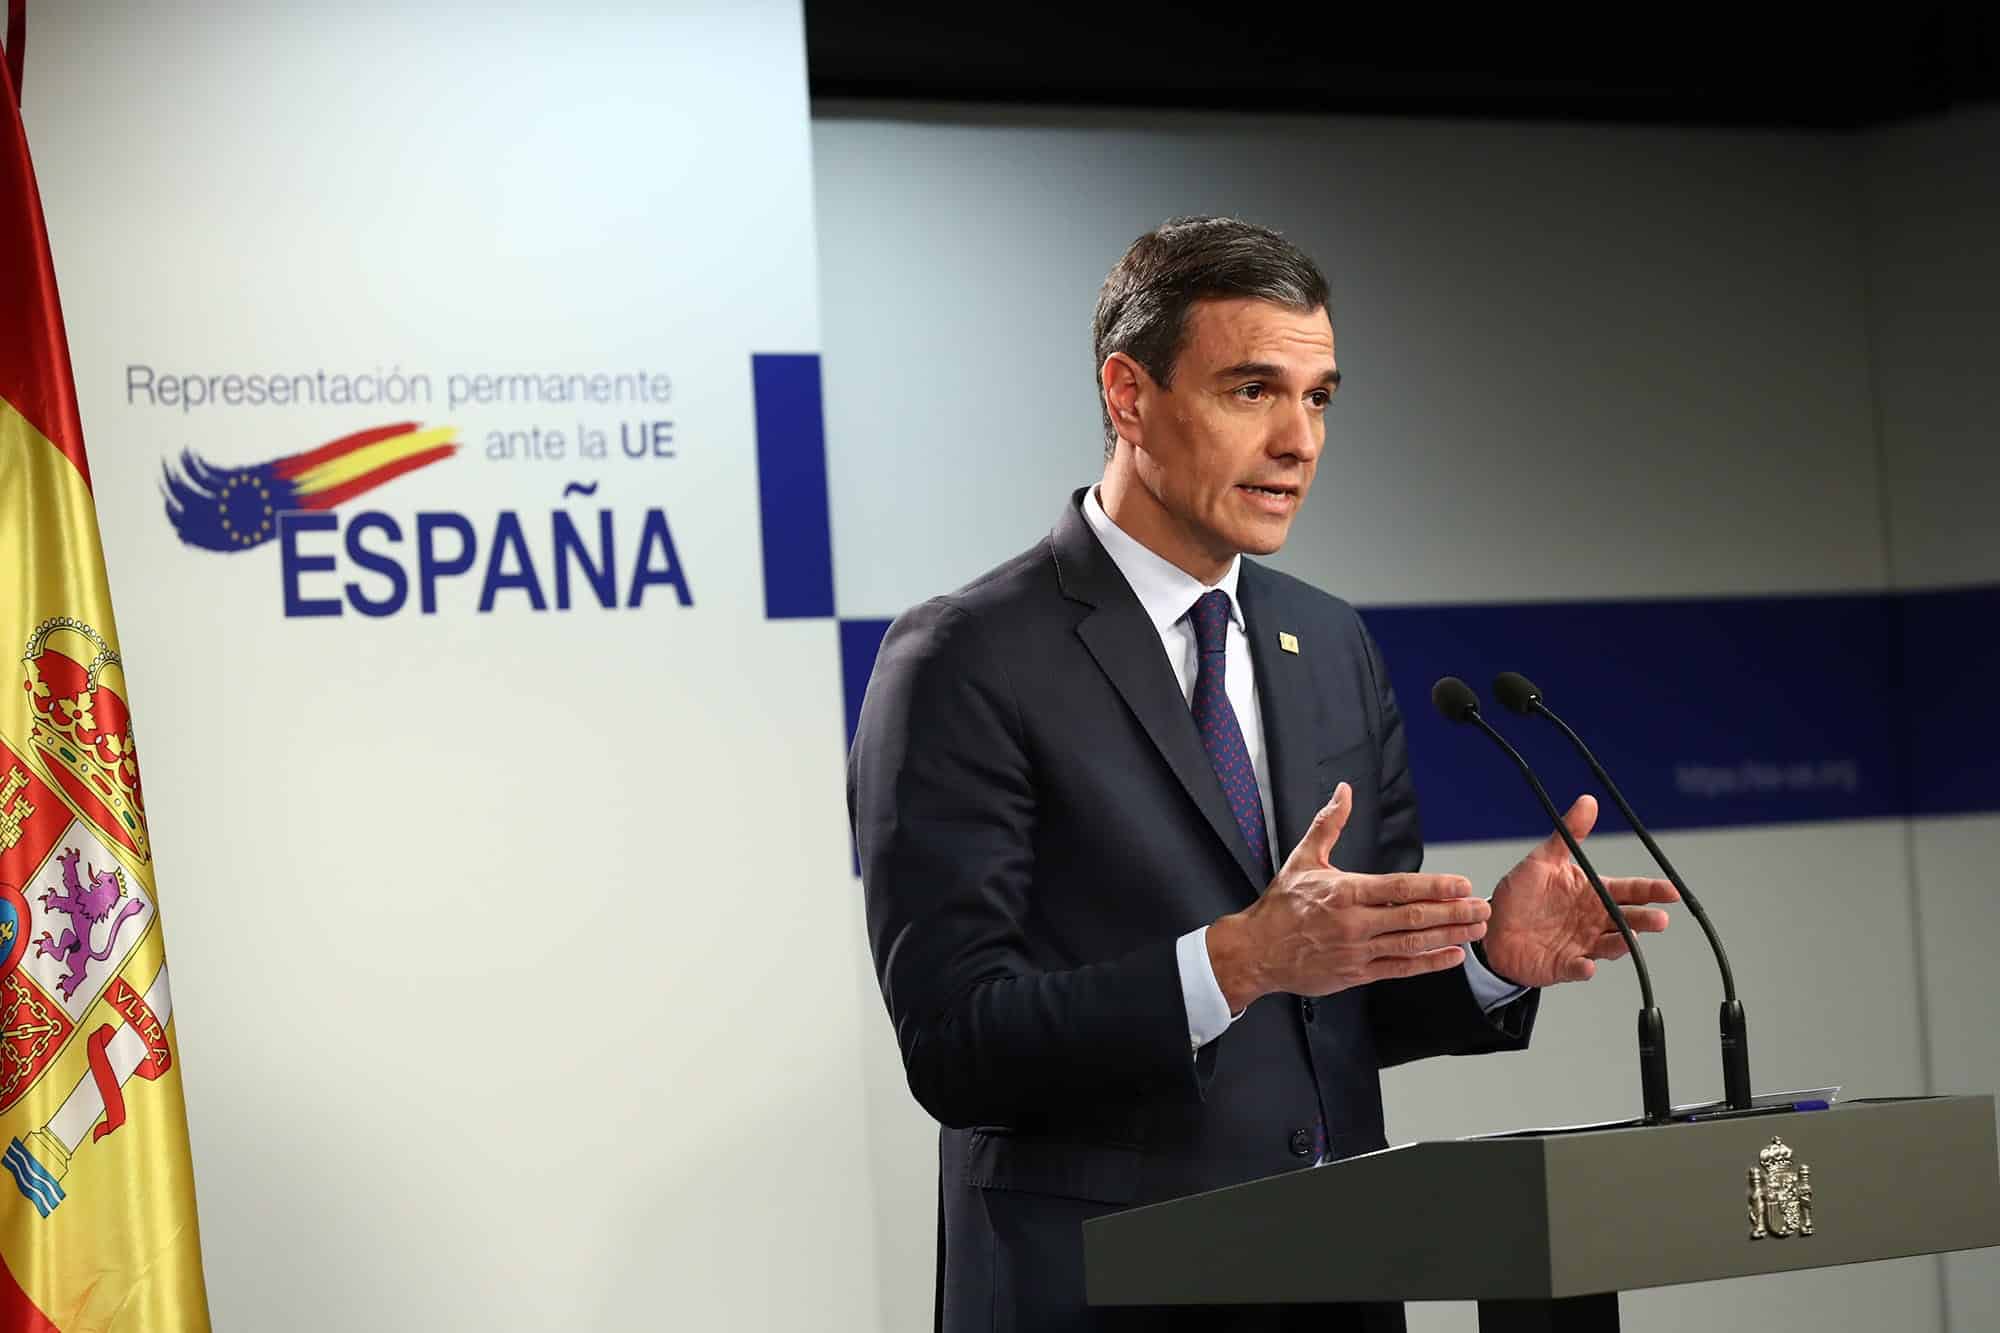 Il 28 maggio c'è l'antipasto delle elezioni generali in Spagna